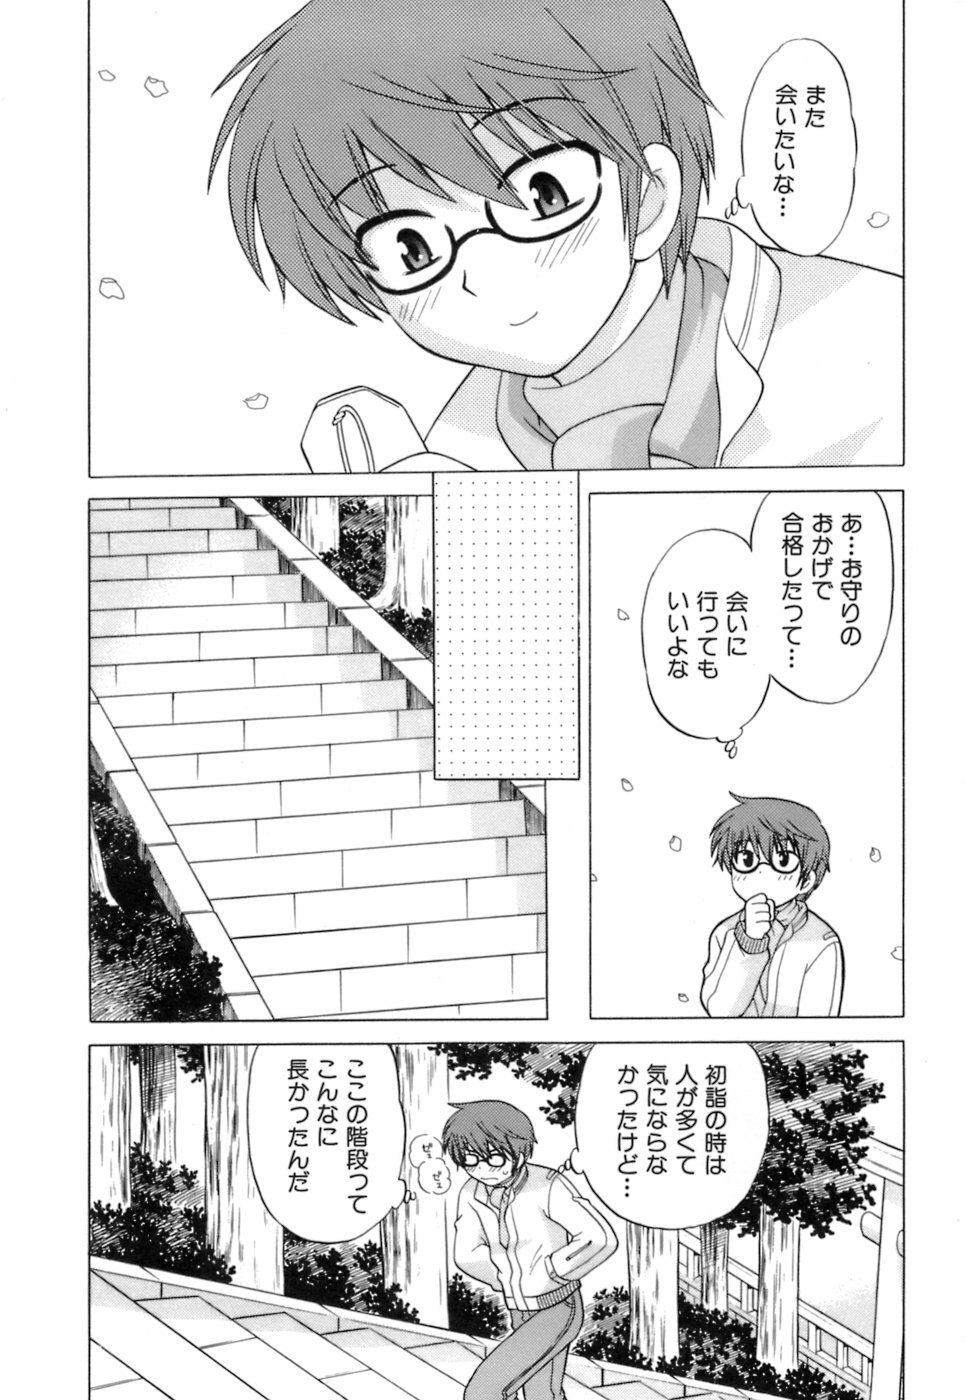 [Kotono Wakako] Miko Moe 1 page 12 full